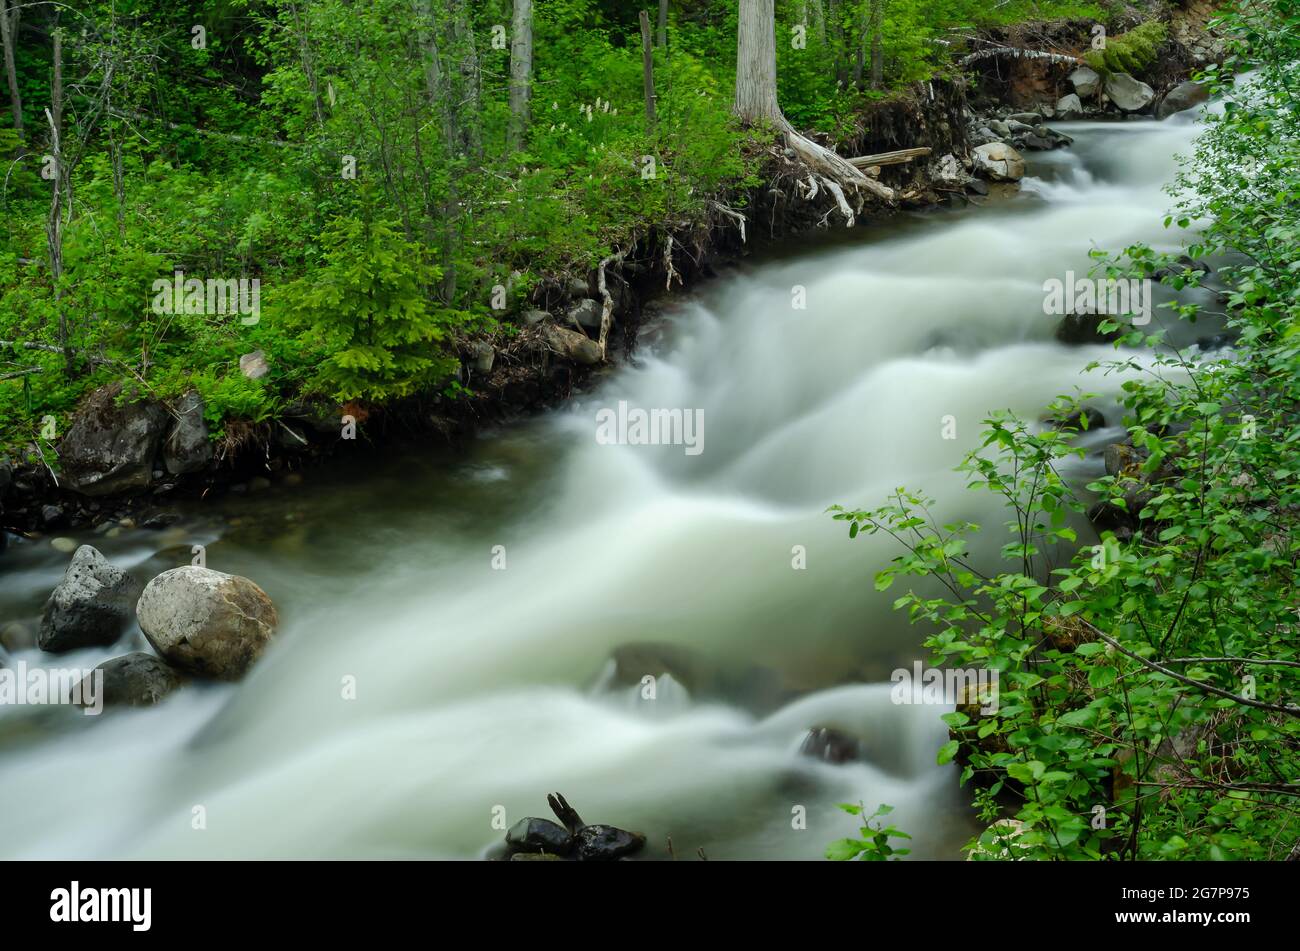 Cascate di Moul nel Wells Grey Provincial Park, British Columbia, Canada. Il fiume inizia con brevi e progressive cascate, che conducono ad una grande cascata rocciosa. Foto Stock